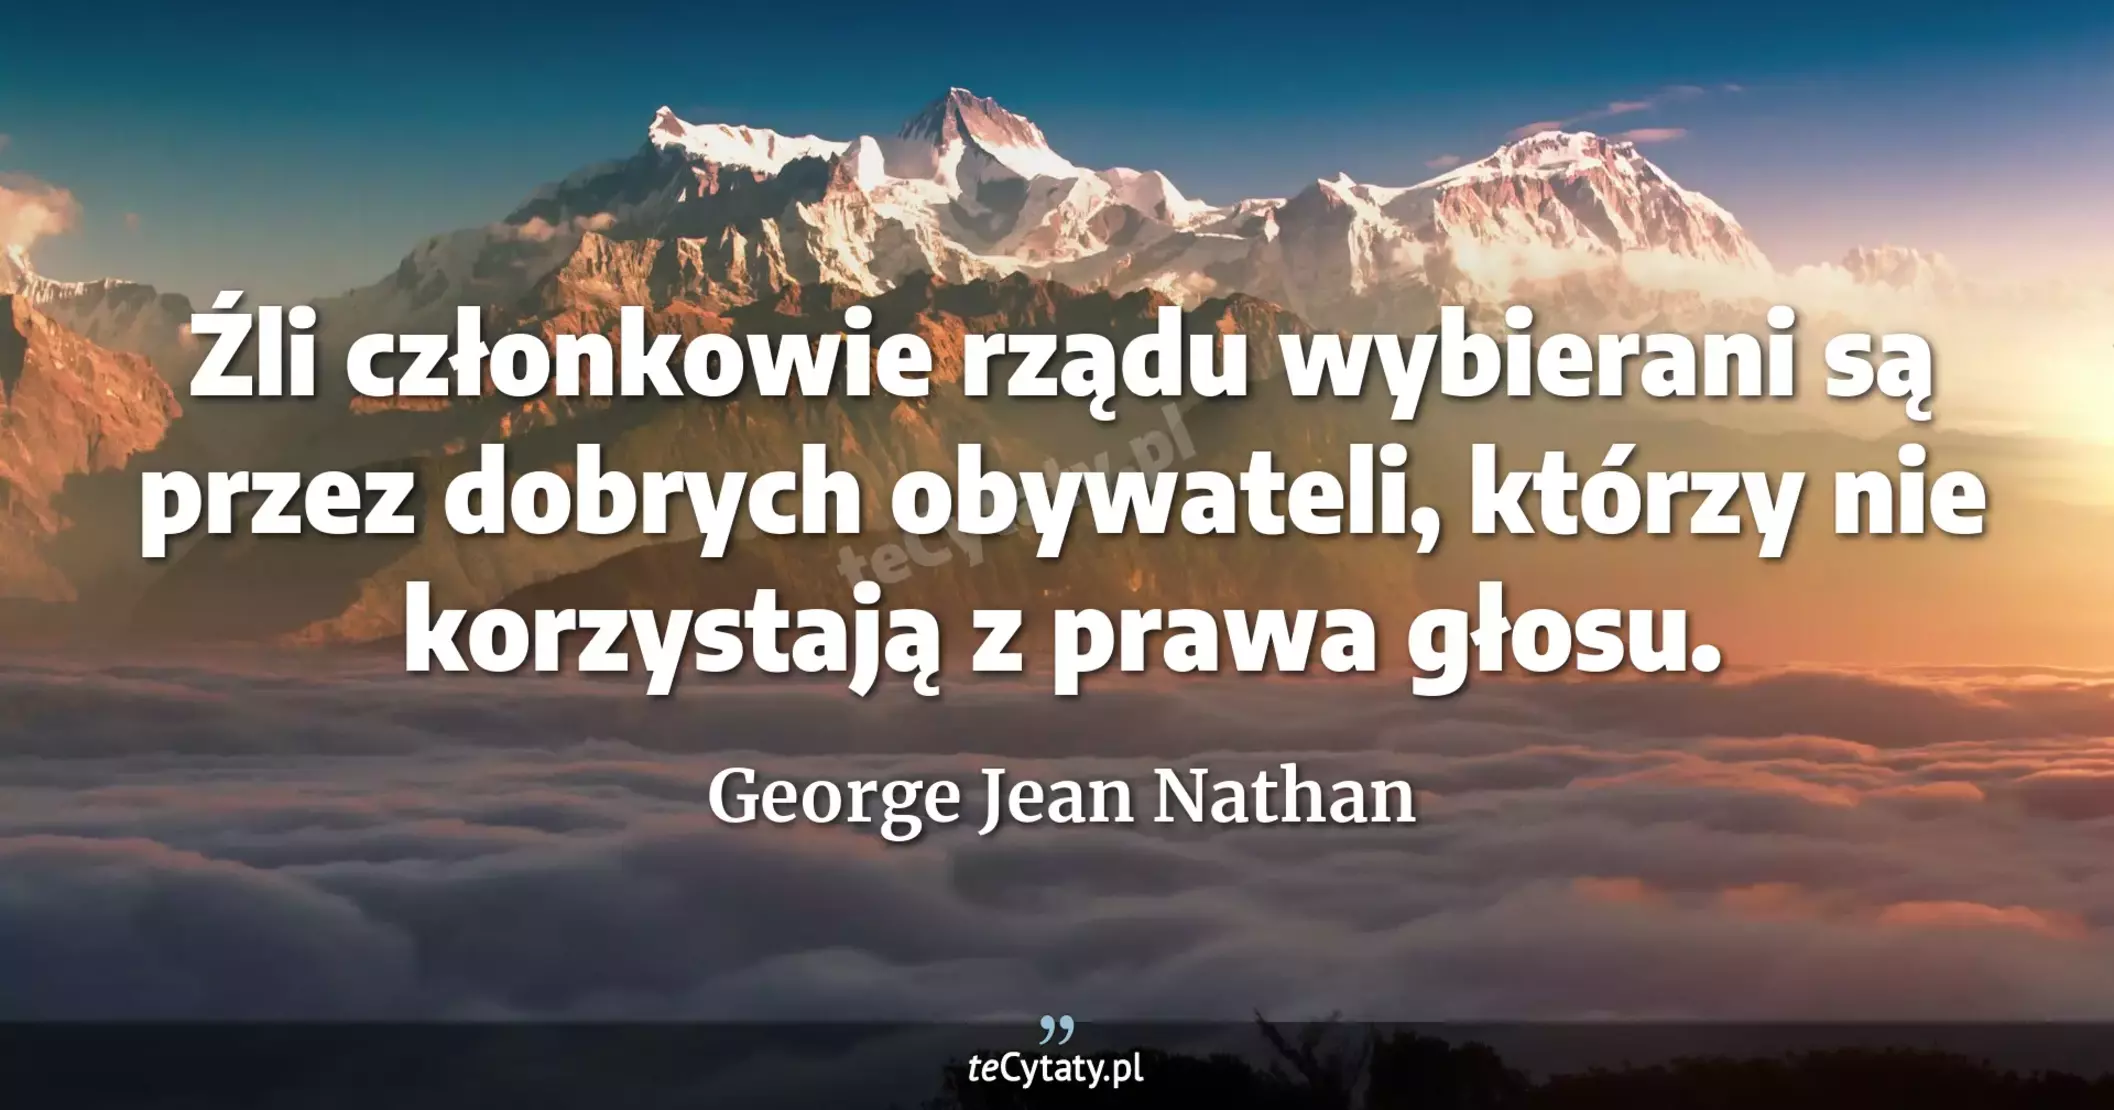 Źli członkowie rządu wybierani są przez dobrych obywateli, którzy nie korzystają z prawa głosu. - George Jean Nathan